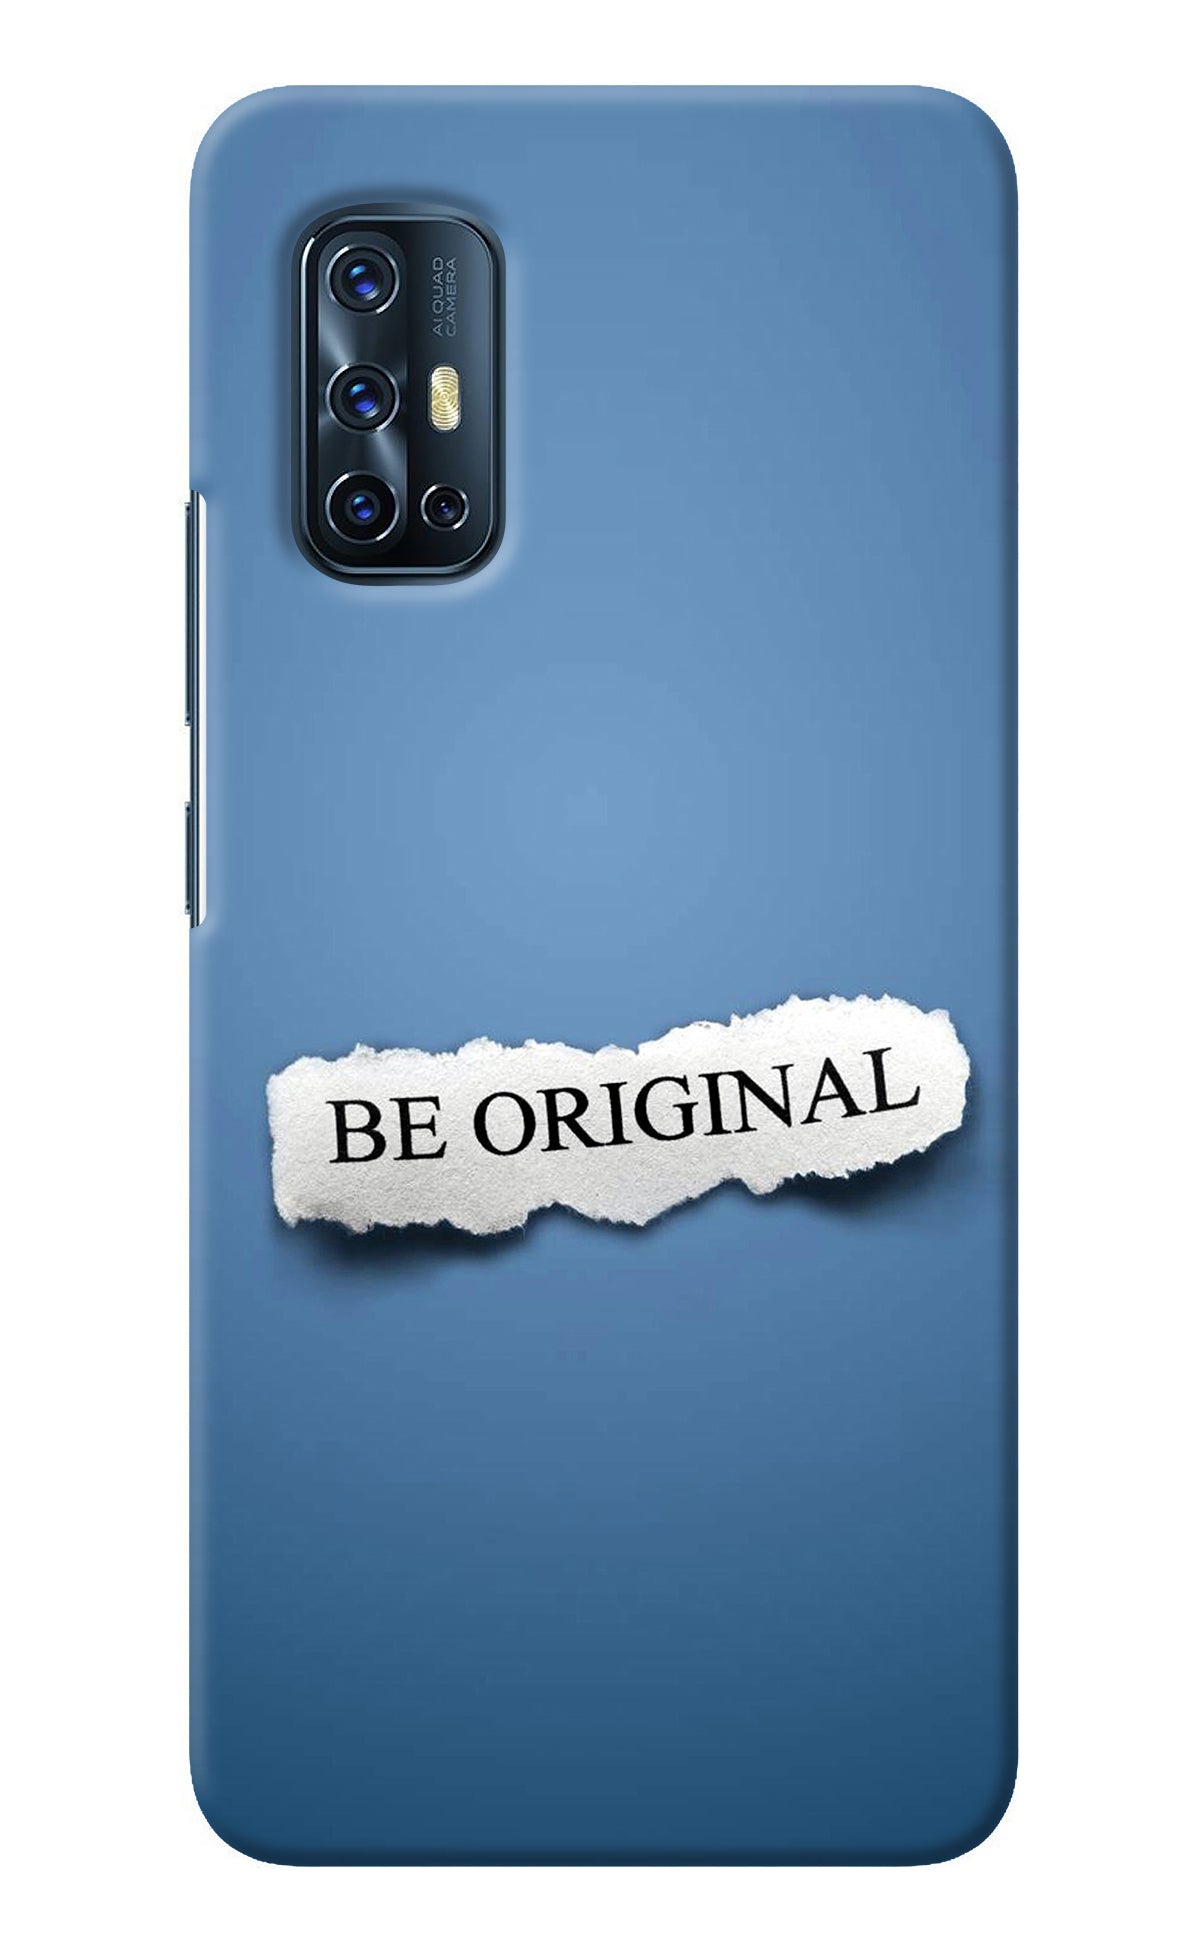 Be Original Vivo V17 Back Cover